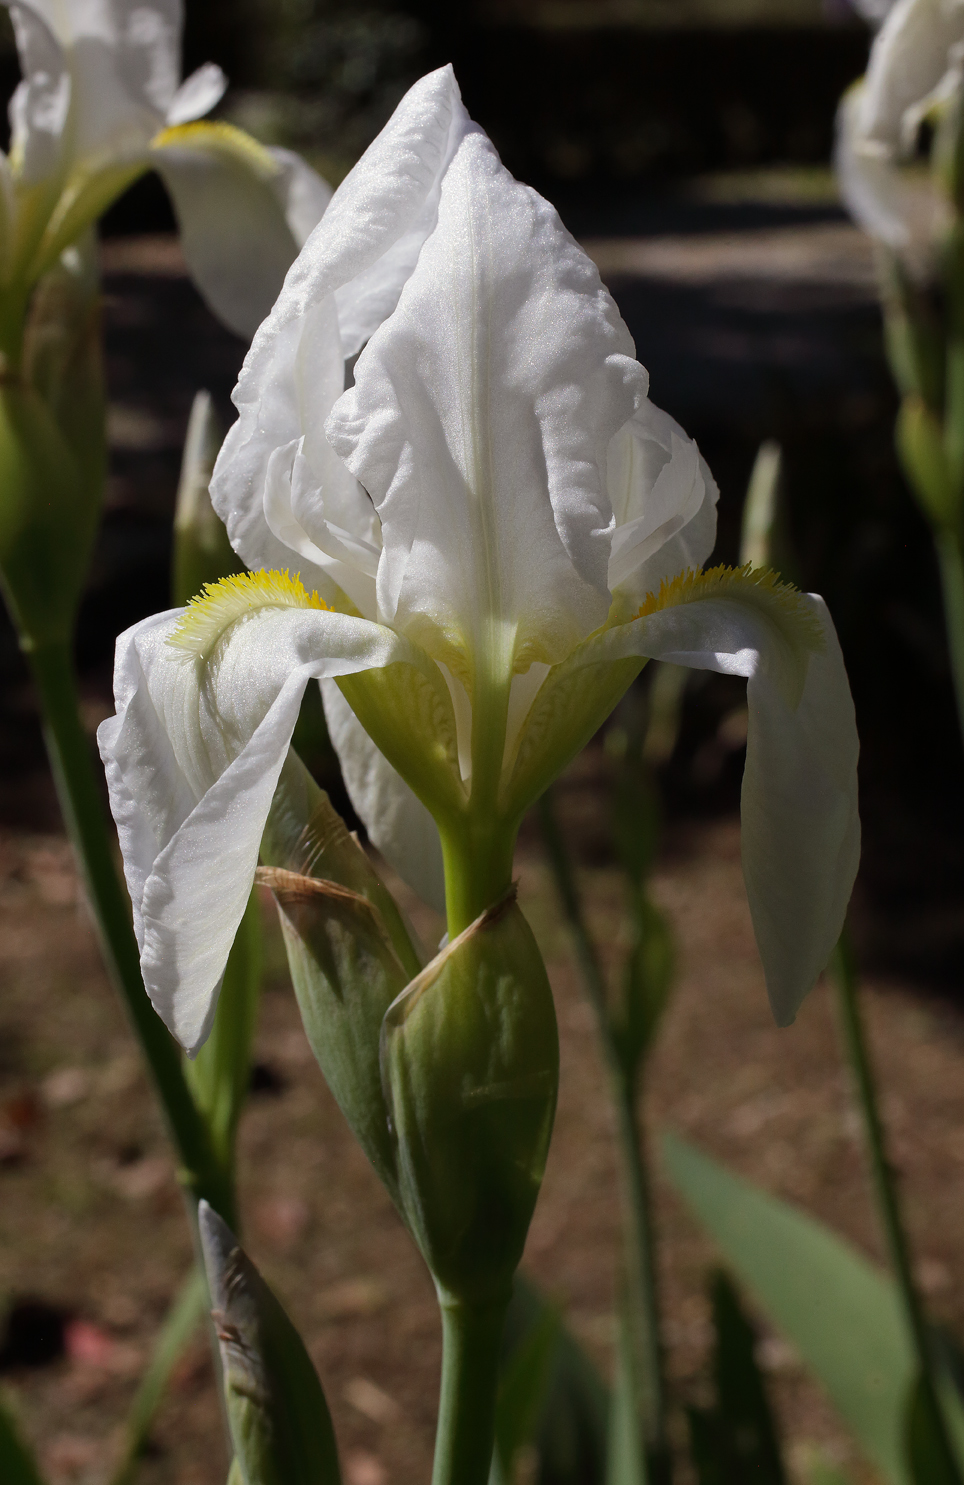 fiore di Iris florentina aperto da poco con le lacinie che non sono ancora del tutto distese e tendono a terminare a punta